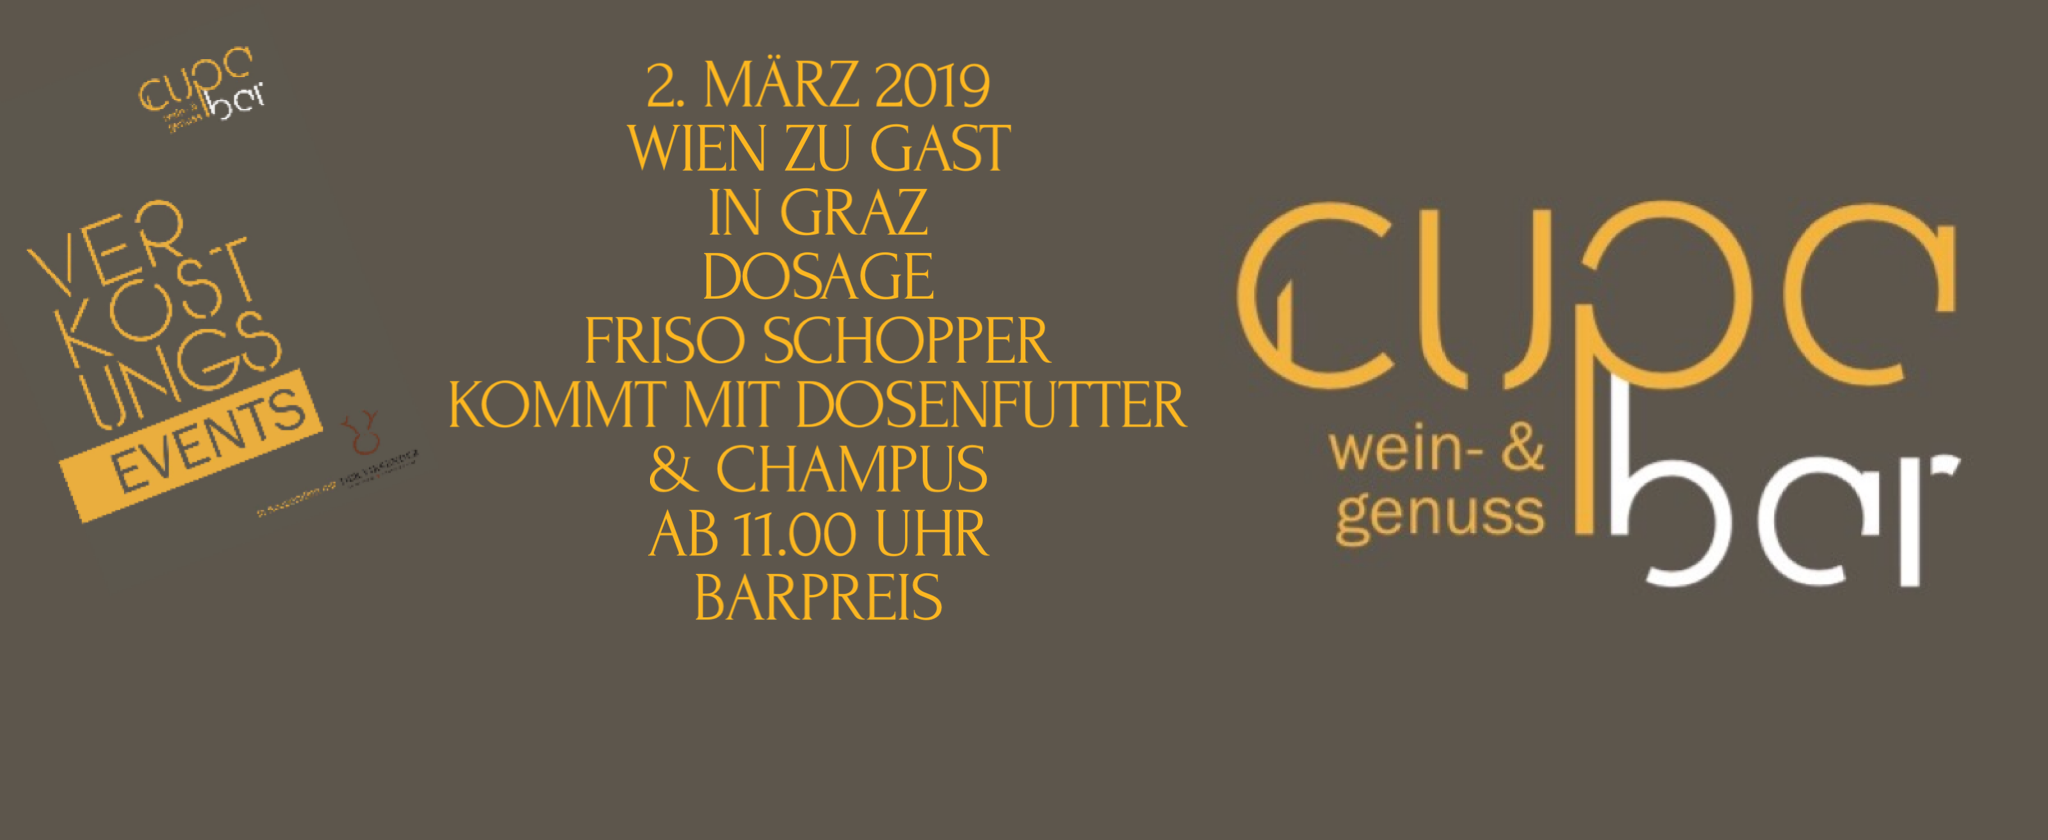 Verkostungs Events . Cupa Bar . Dosage Friso Schopper . 2. März 2019